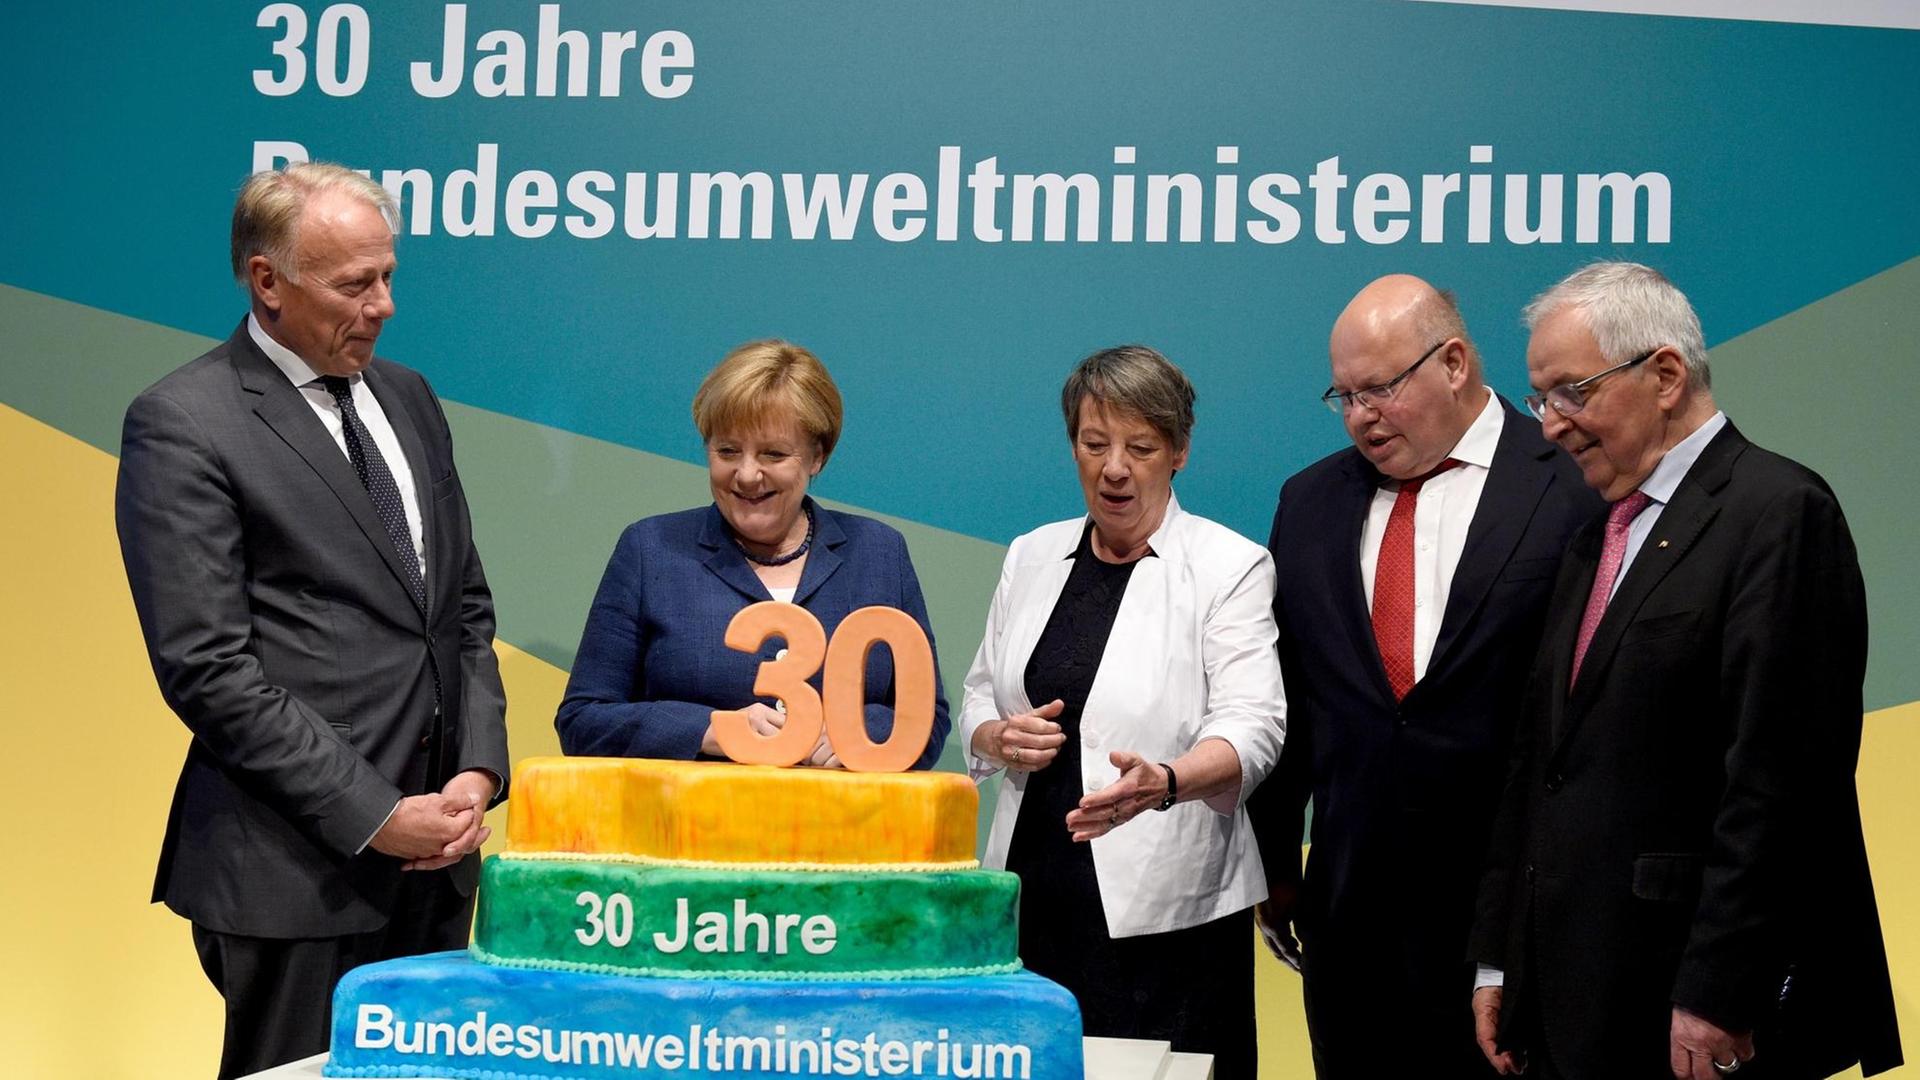 Die ehemaligen Umweltminister Jürgen Trittin und Kanzlerin Angela Merkel stehen mit der amtierenden Umweltministerin Barbara Hendricks (SPD), Kanzleramtschef Peter Altmaier (CDU) und Klaus Töpfer (CDU) vor einer Torte, auf der zu lesen ist: 30 Jahre Bundesumweltministerium.